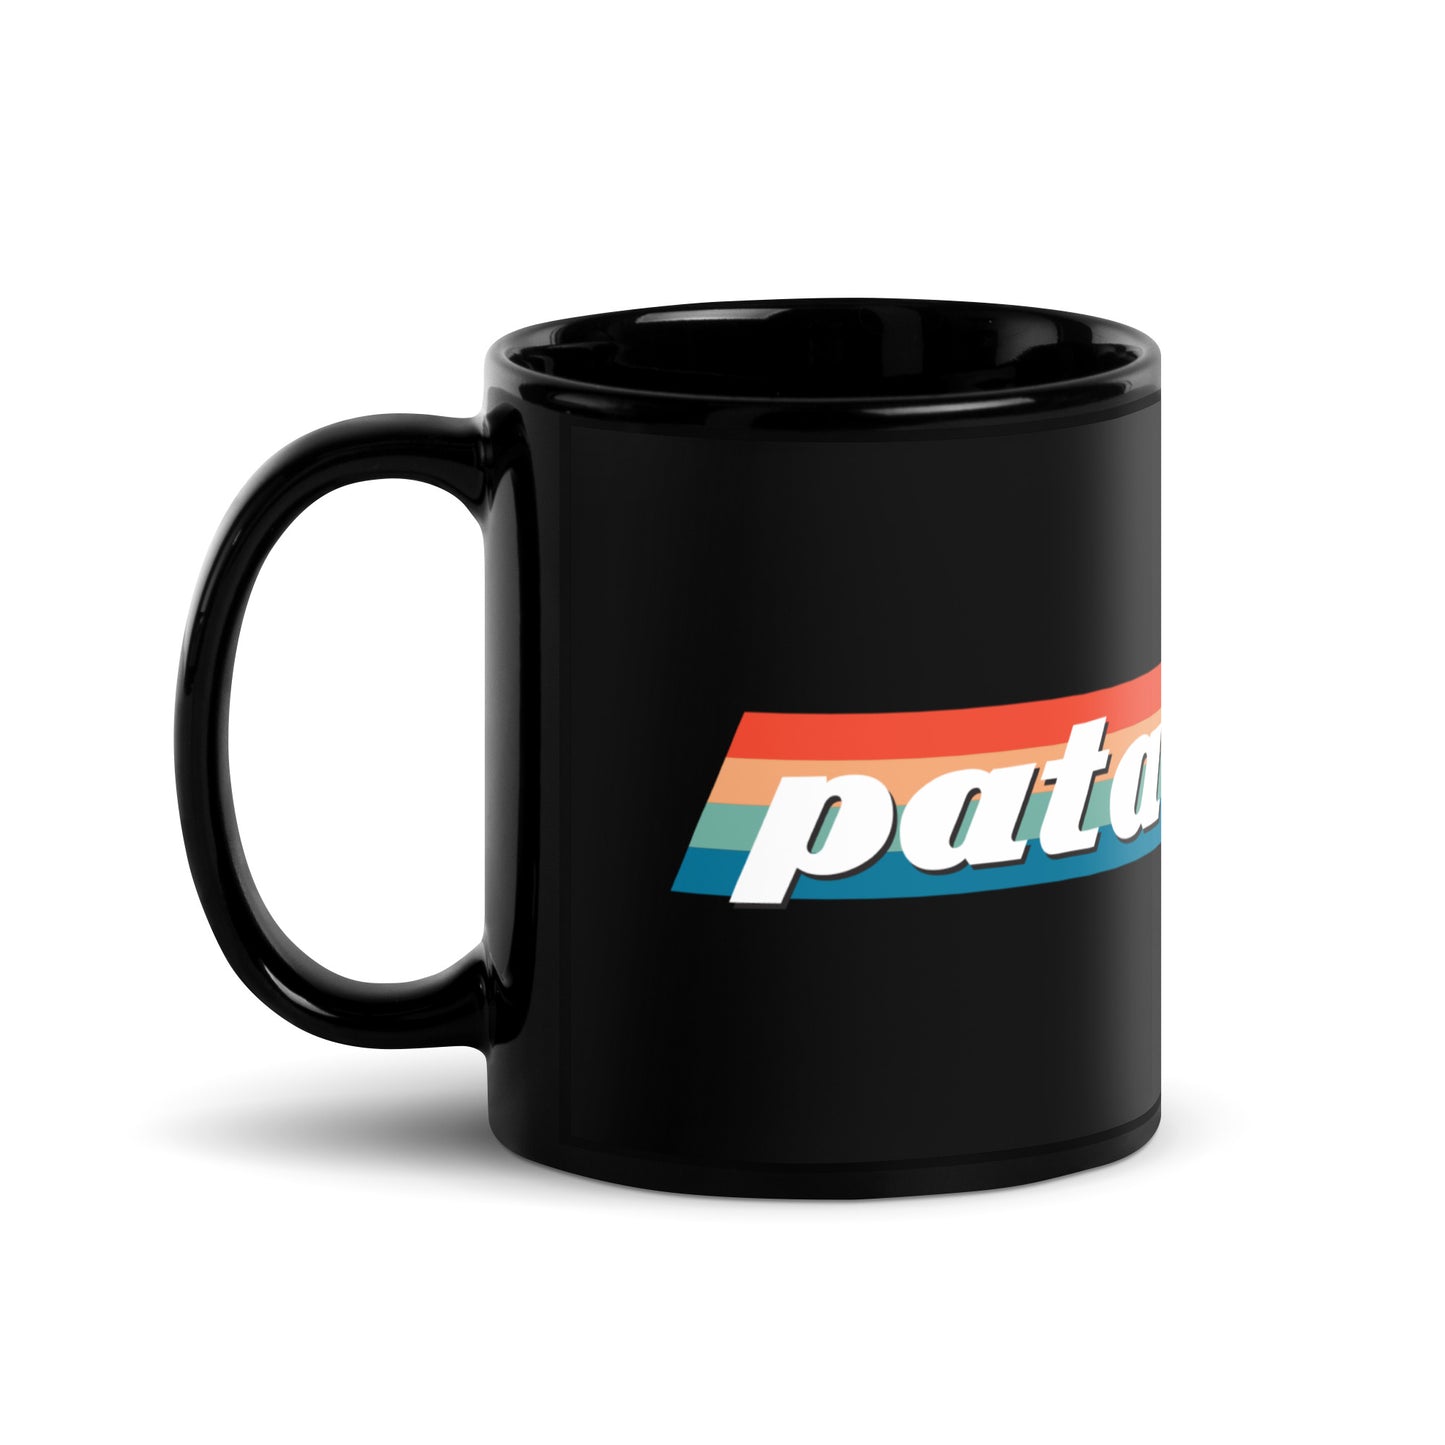 Patavision's Black Glossy Mug